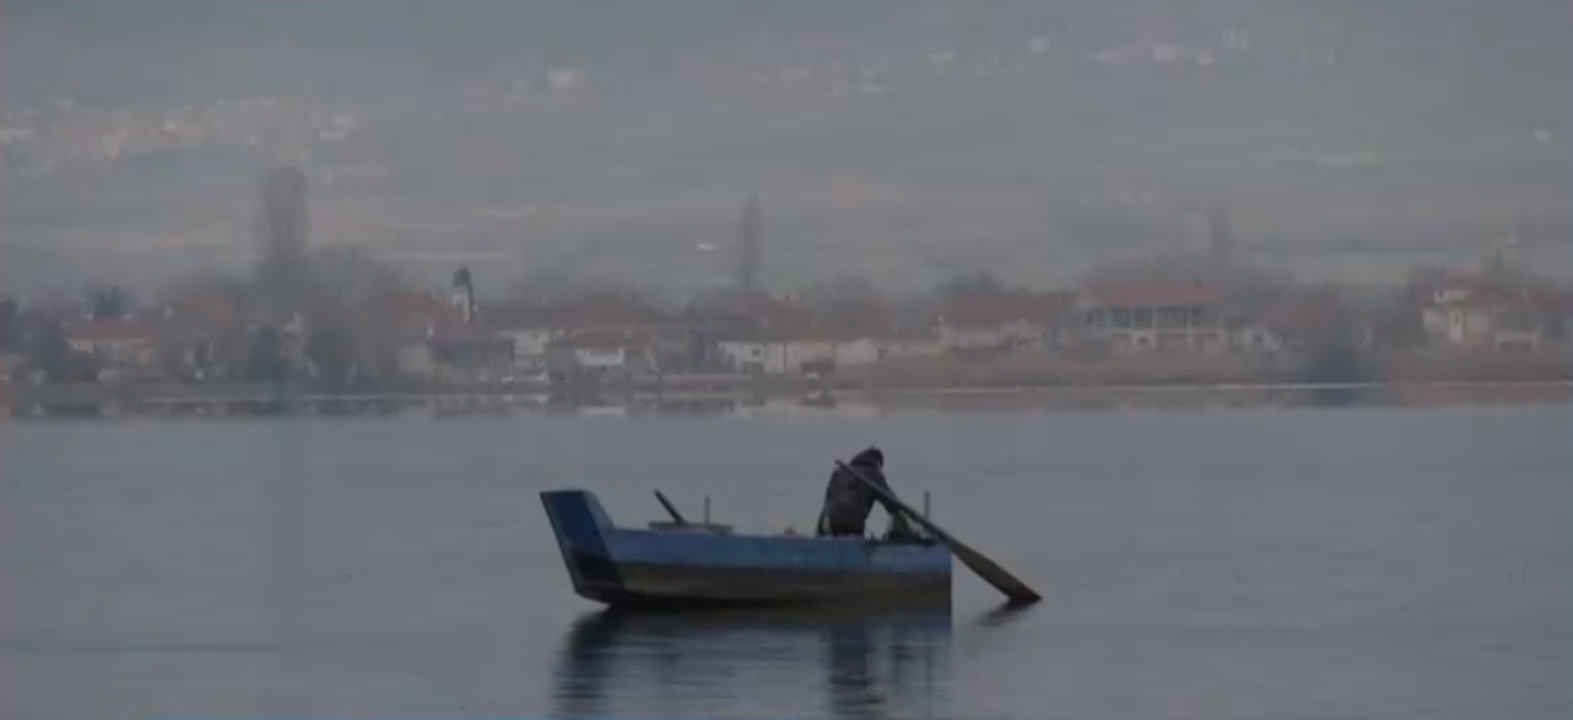 Καστοριά: Νεκρό σπάνιο θαλασσοπούλι στη λίμνη- Πιάστηκε στα δίχτυα των ψαράδων